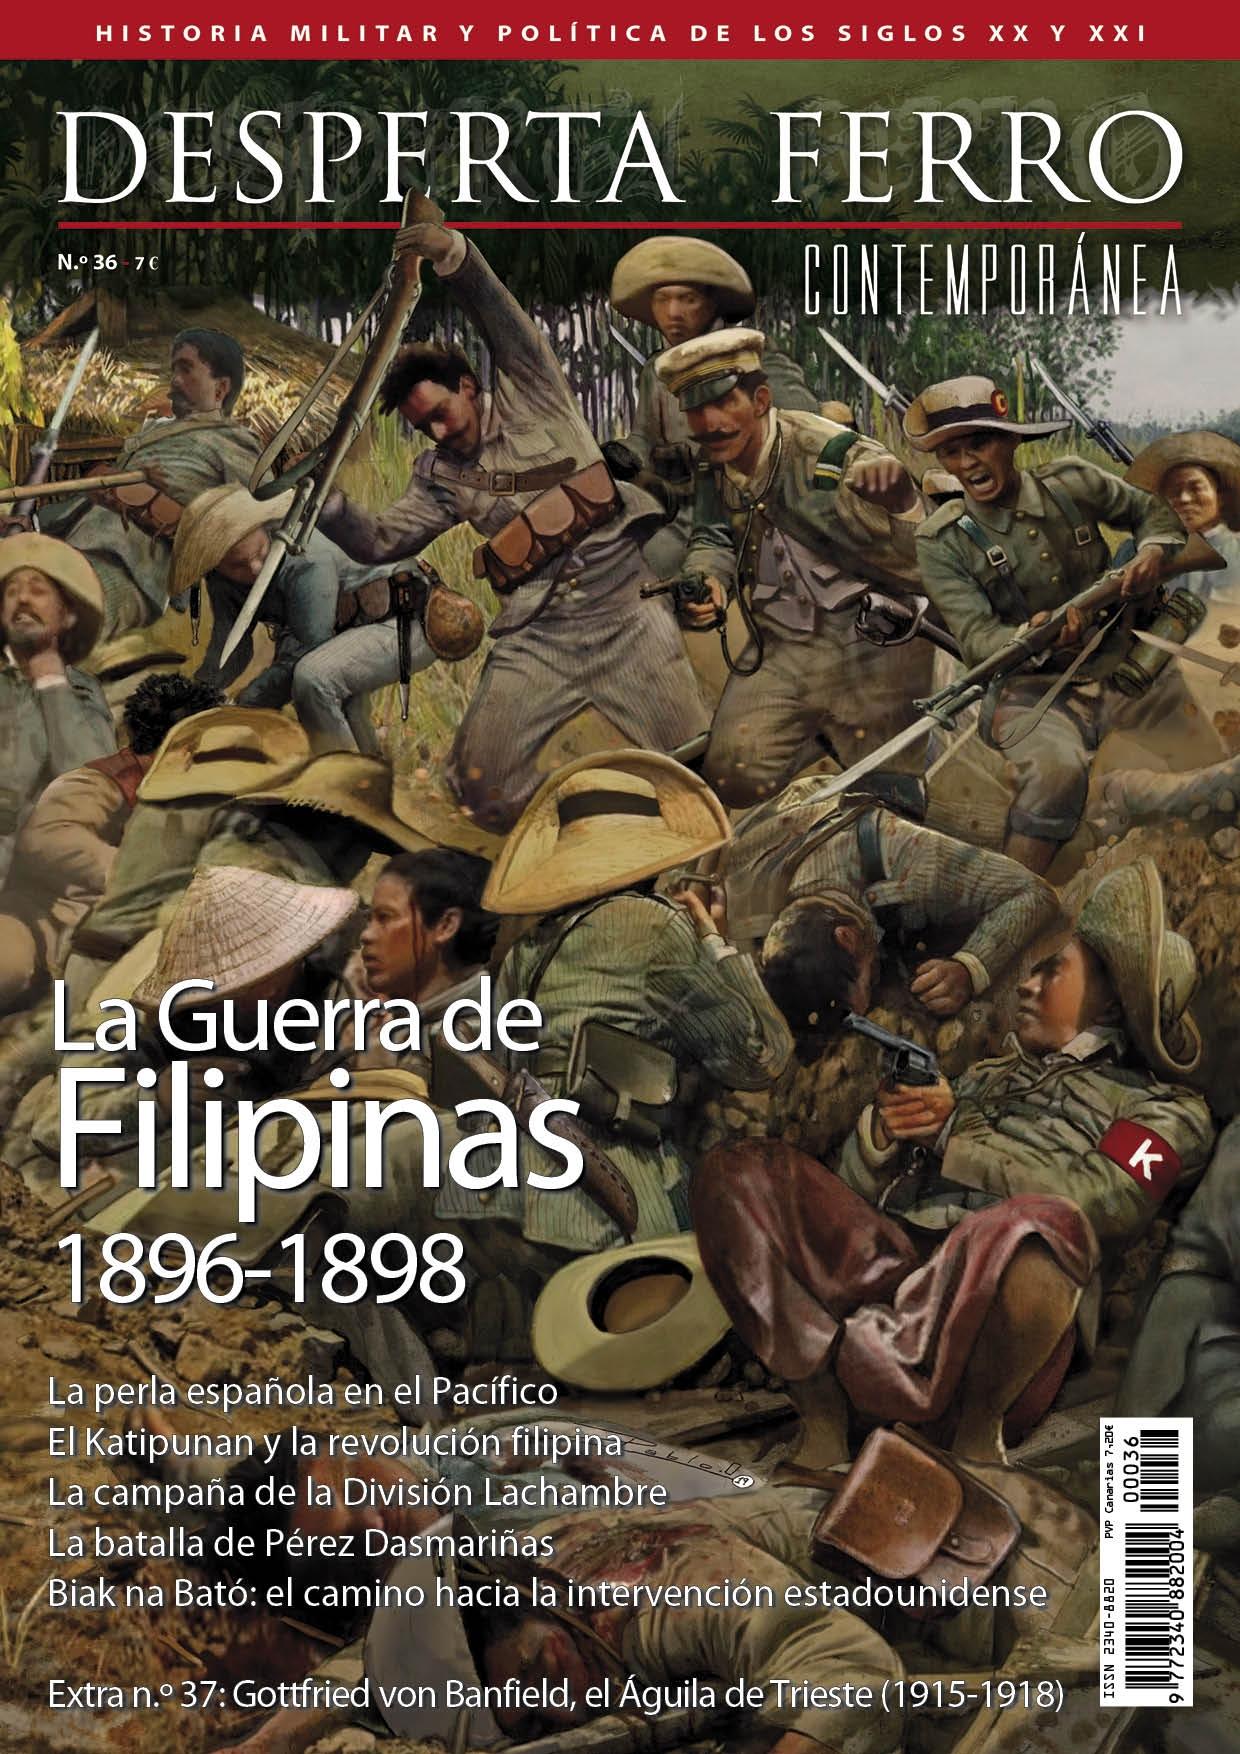 Desperta Ferro. Contemporánea nº 36: La guerra de Filipinas 1896-1898